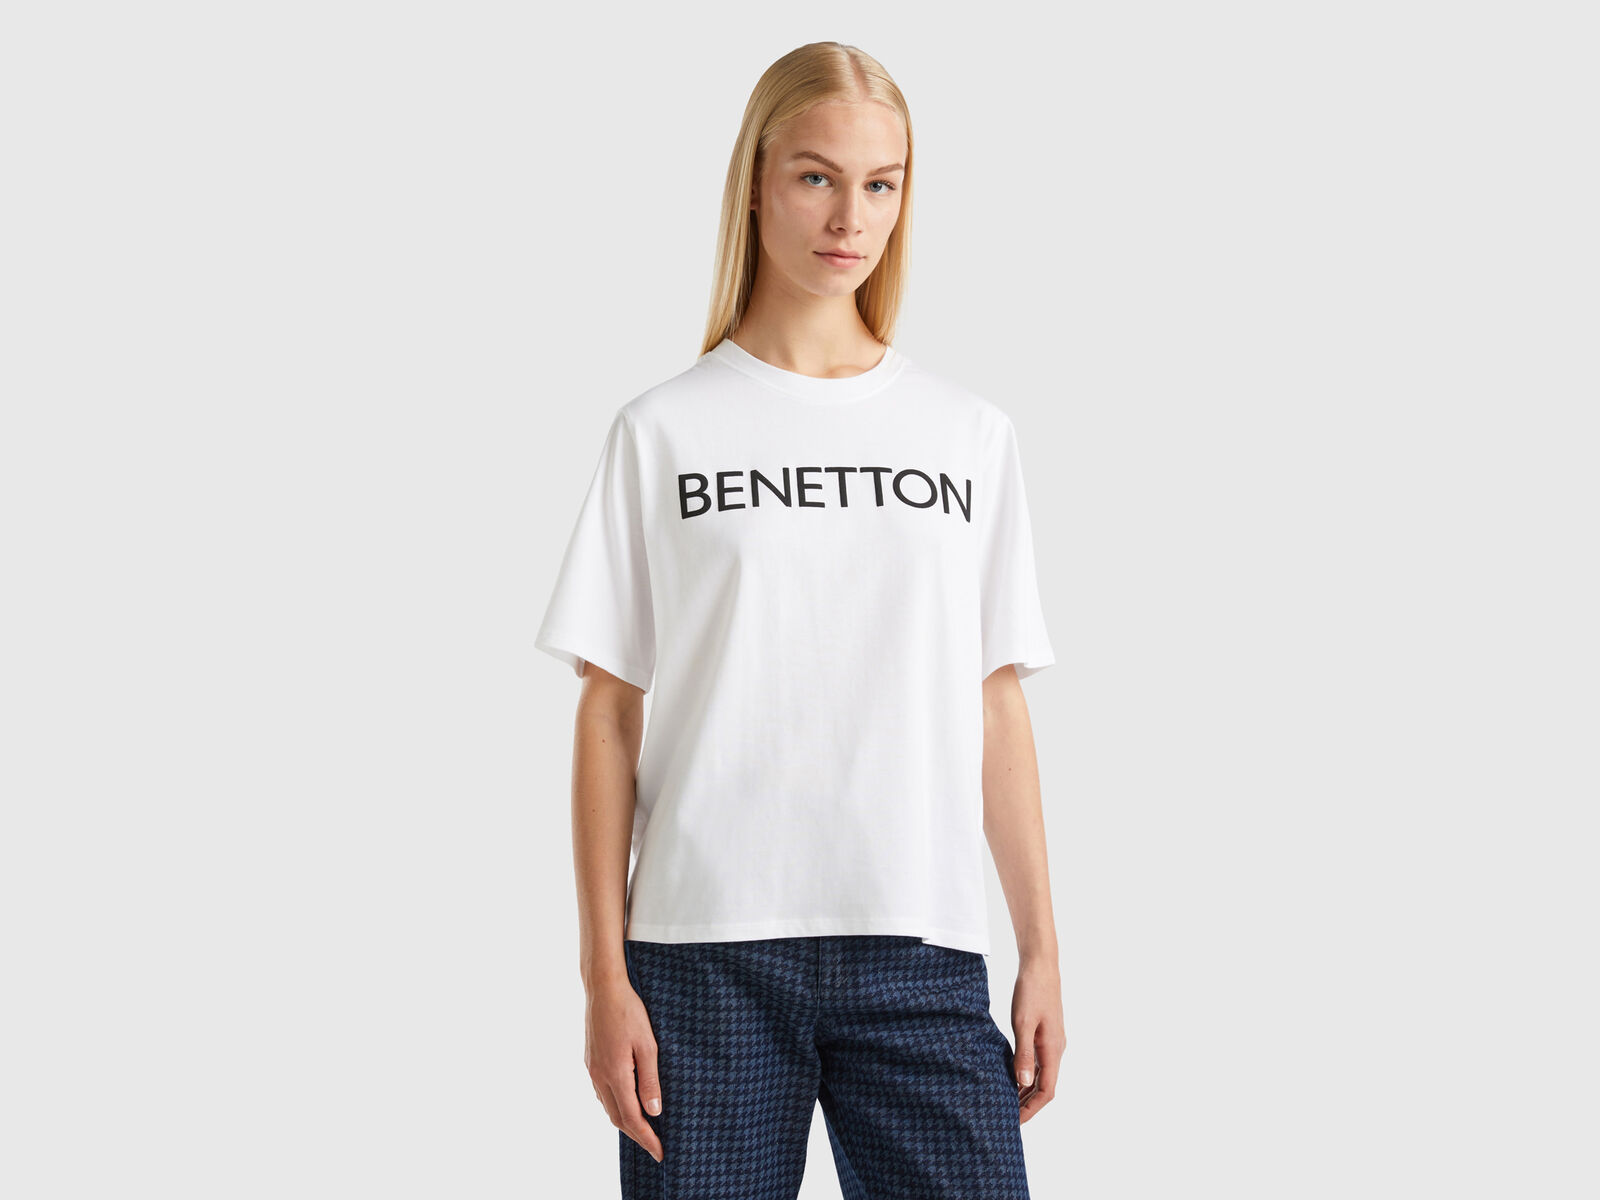 T-shirt with logo text Benetton - White 